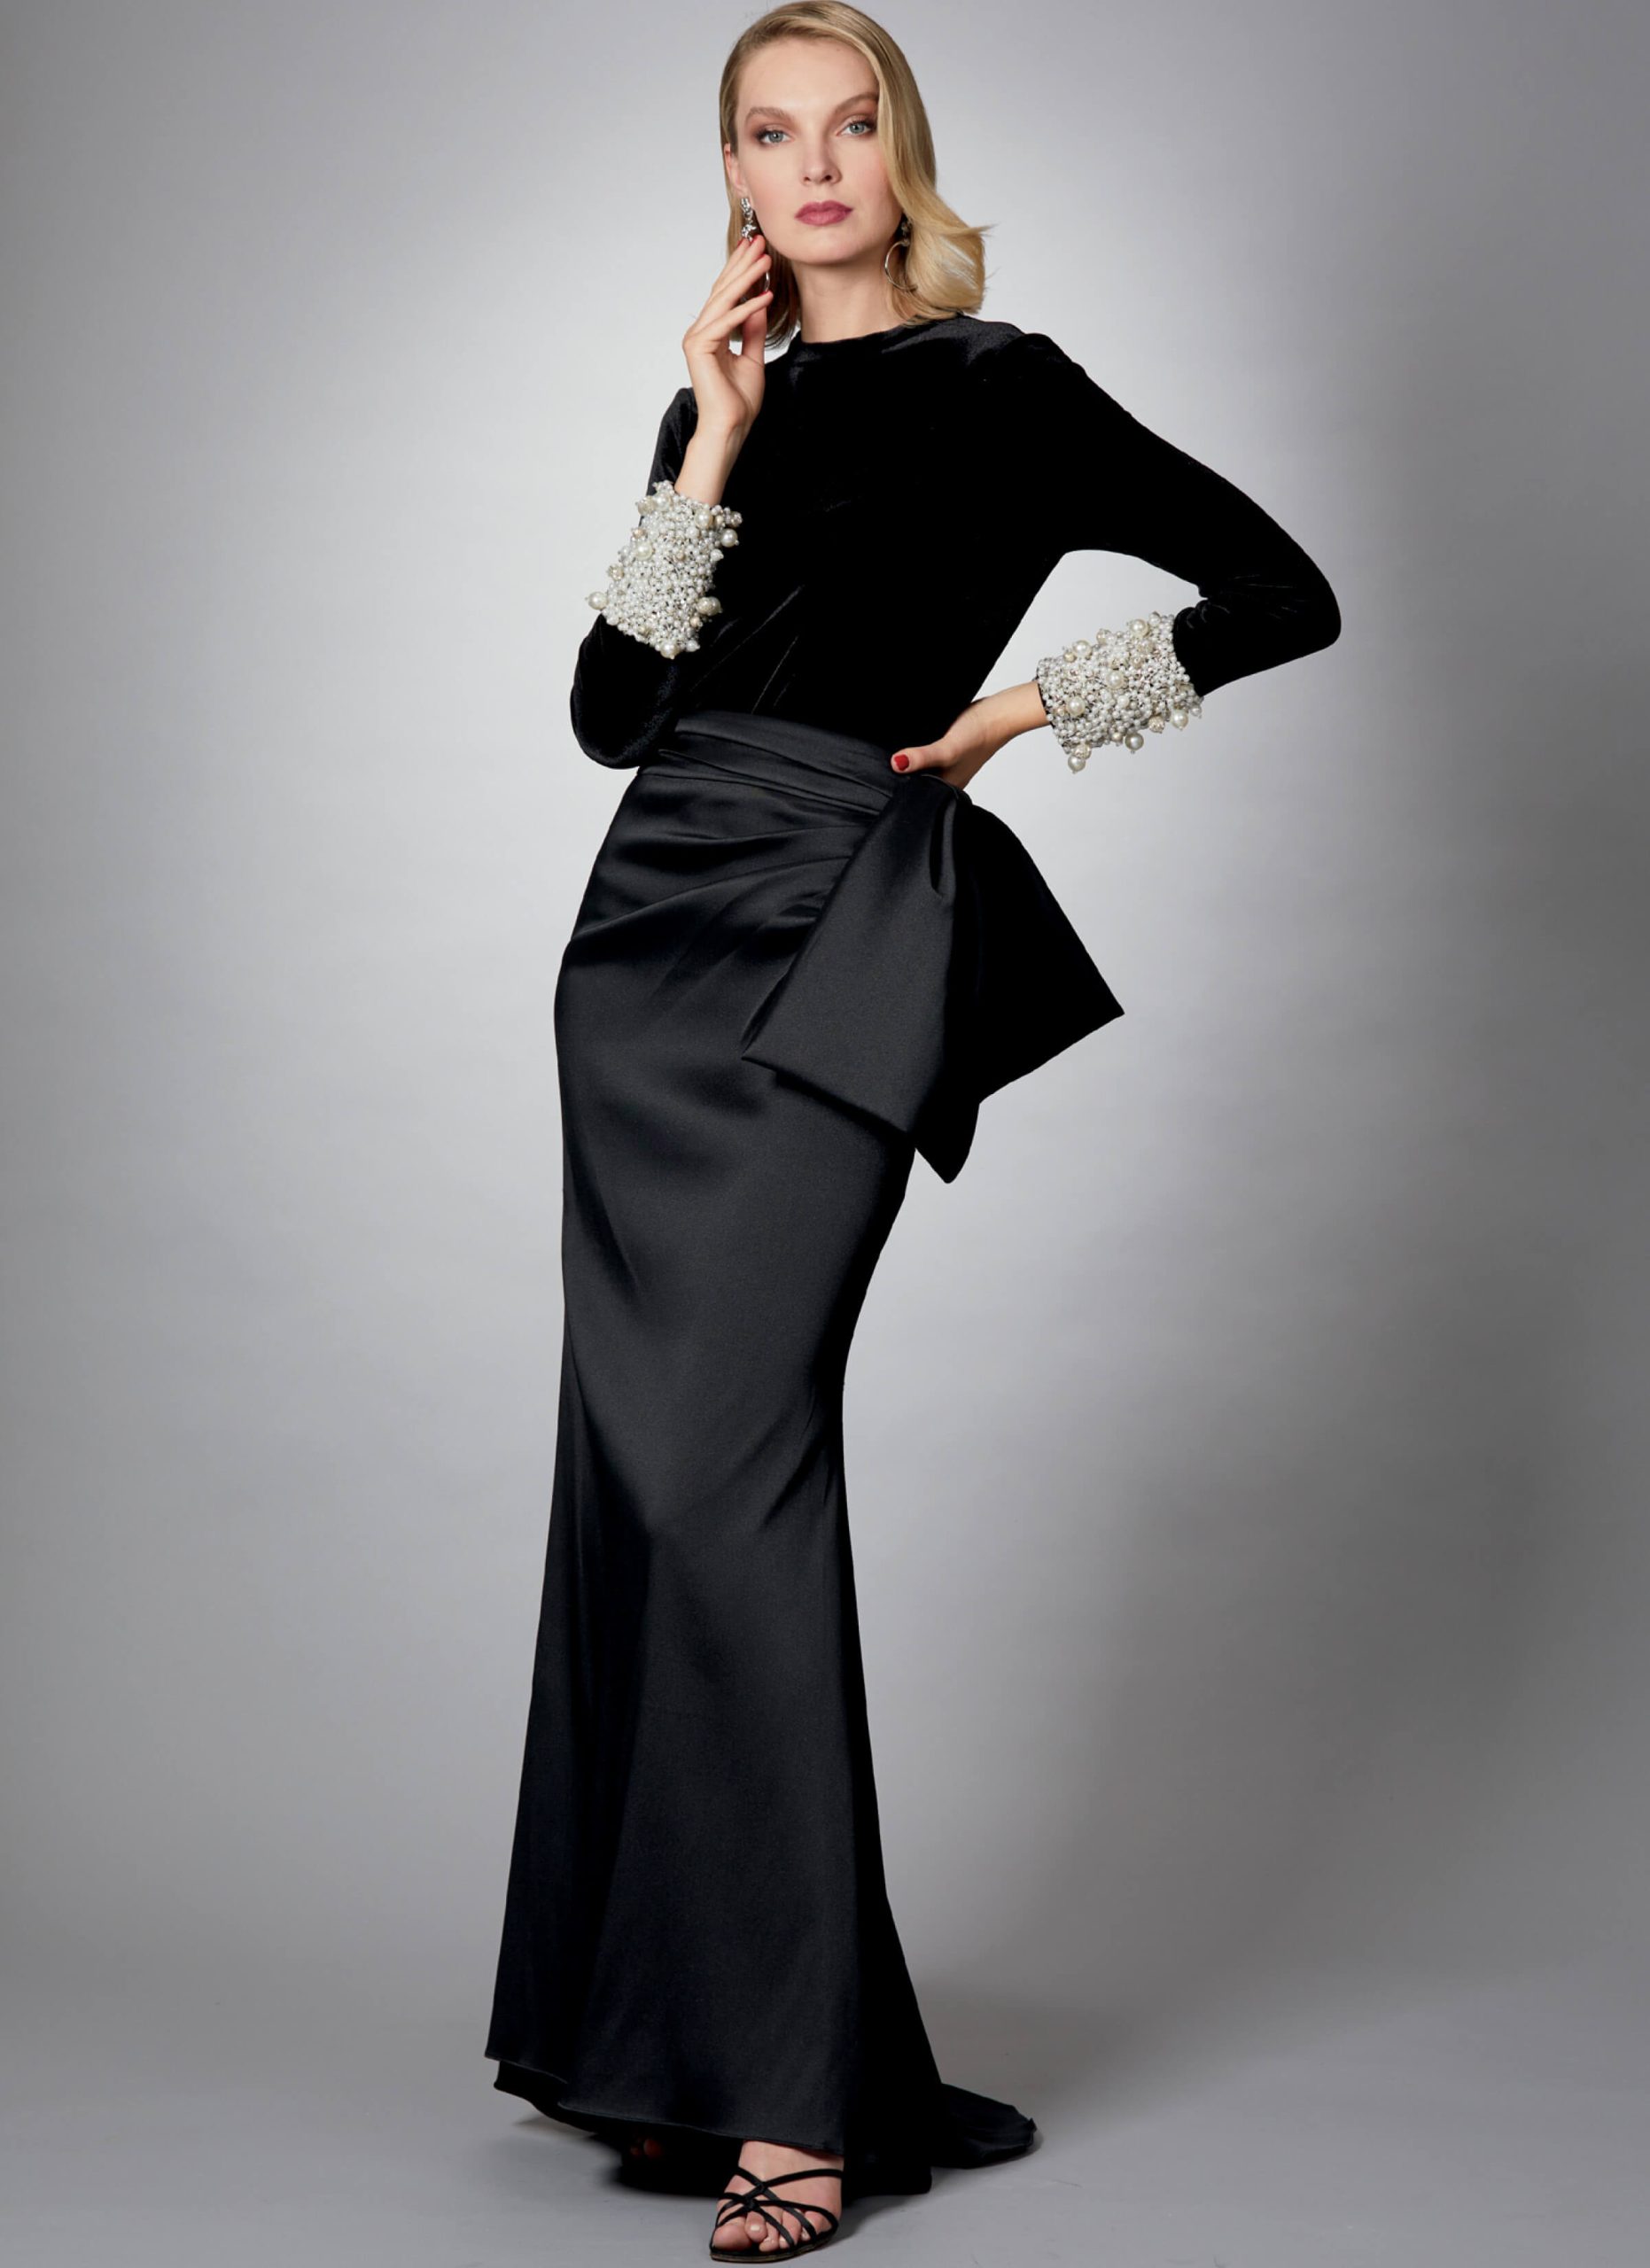 Vogue Patterns V1605 Misses' Top and Skirt